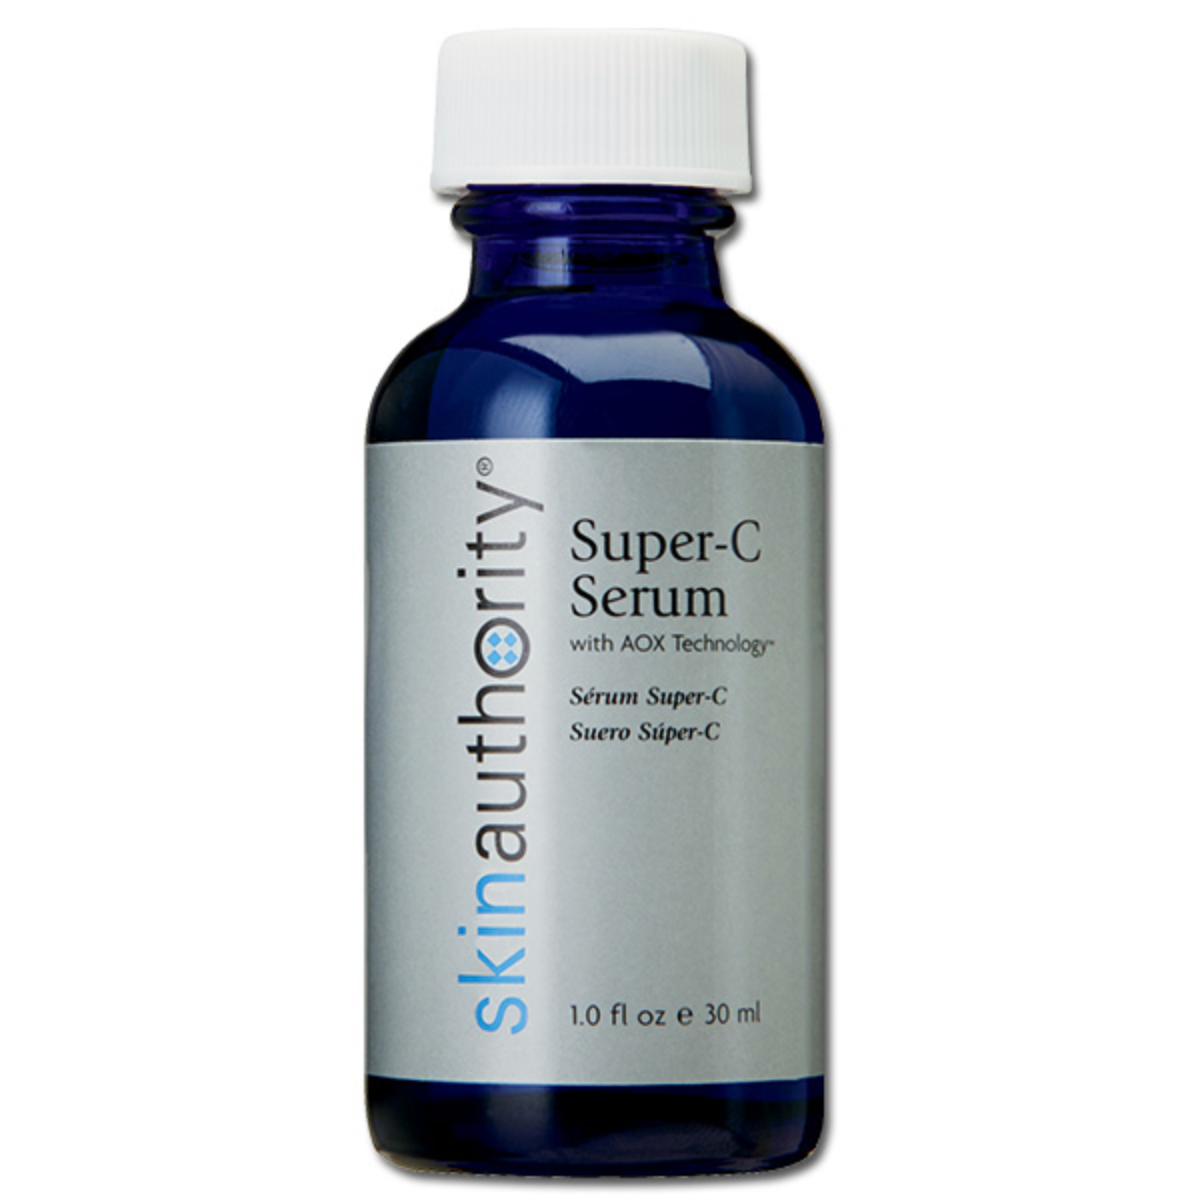 Super-C Serum | Skin Authority